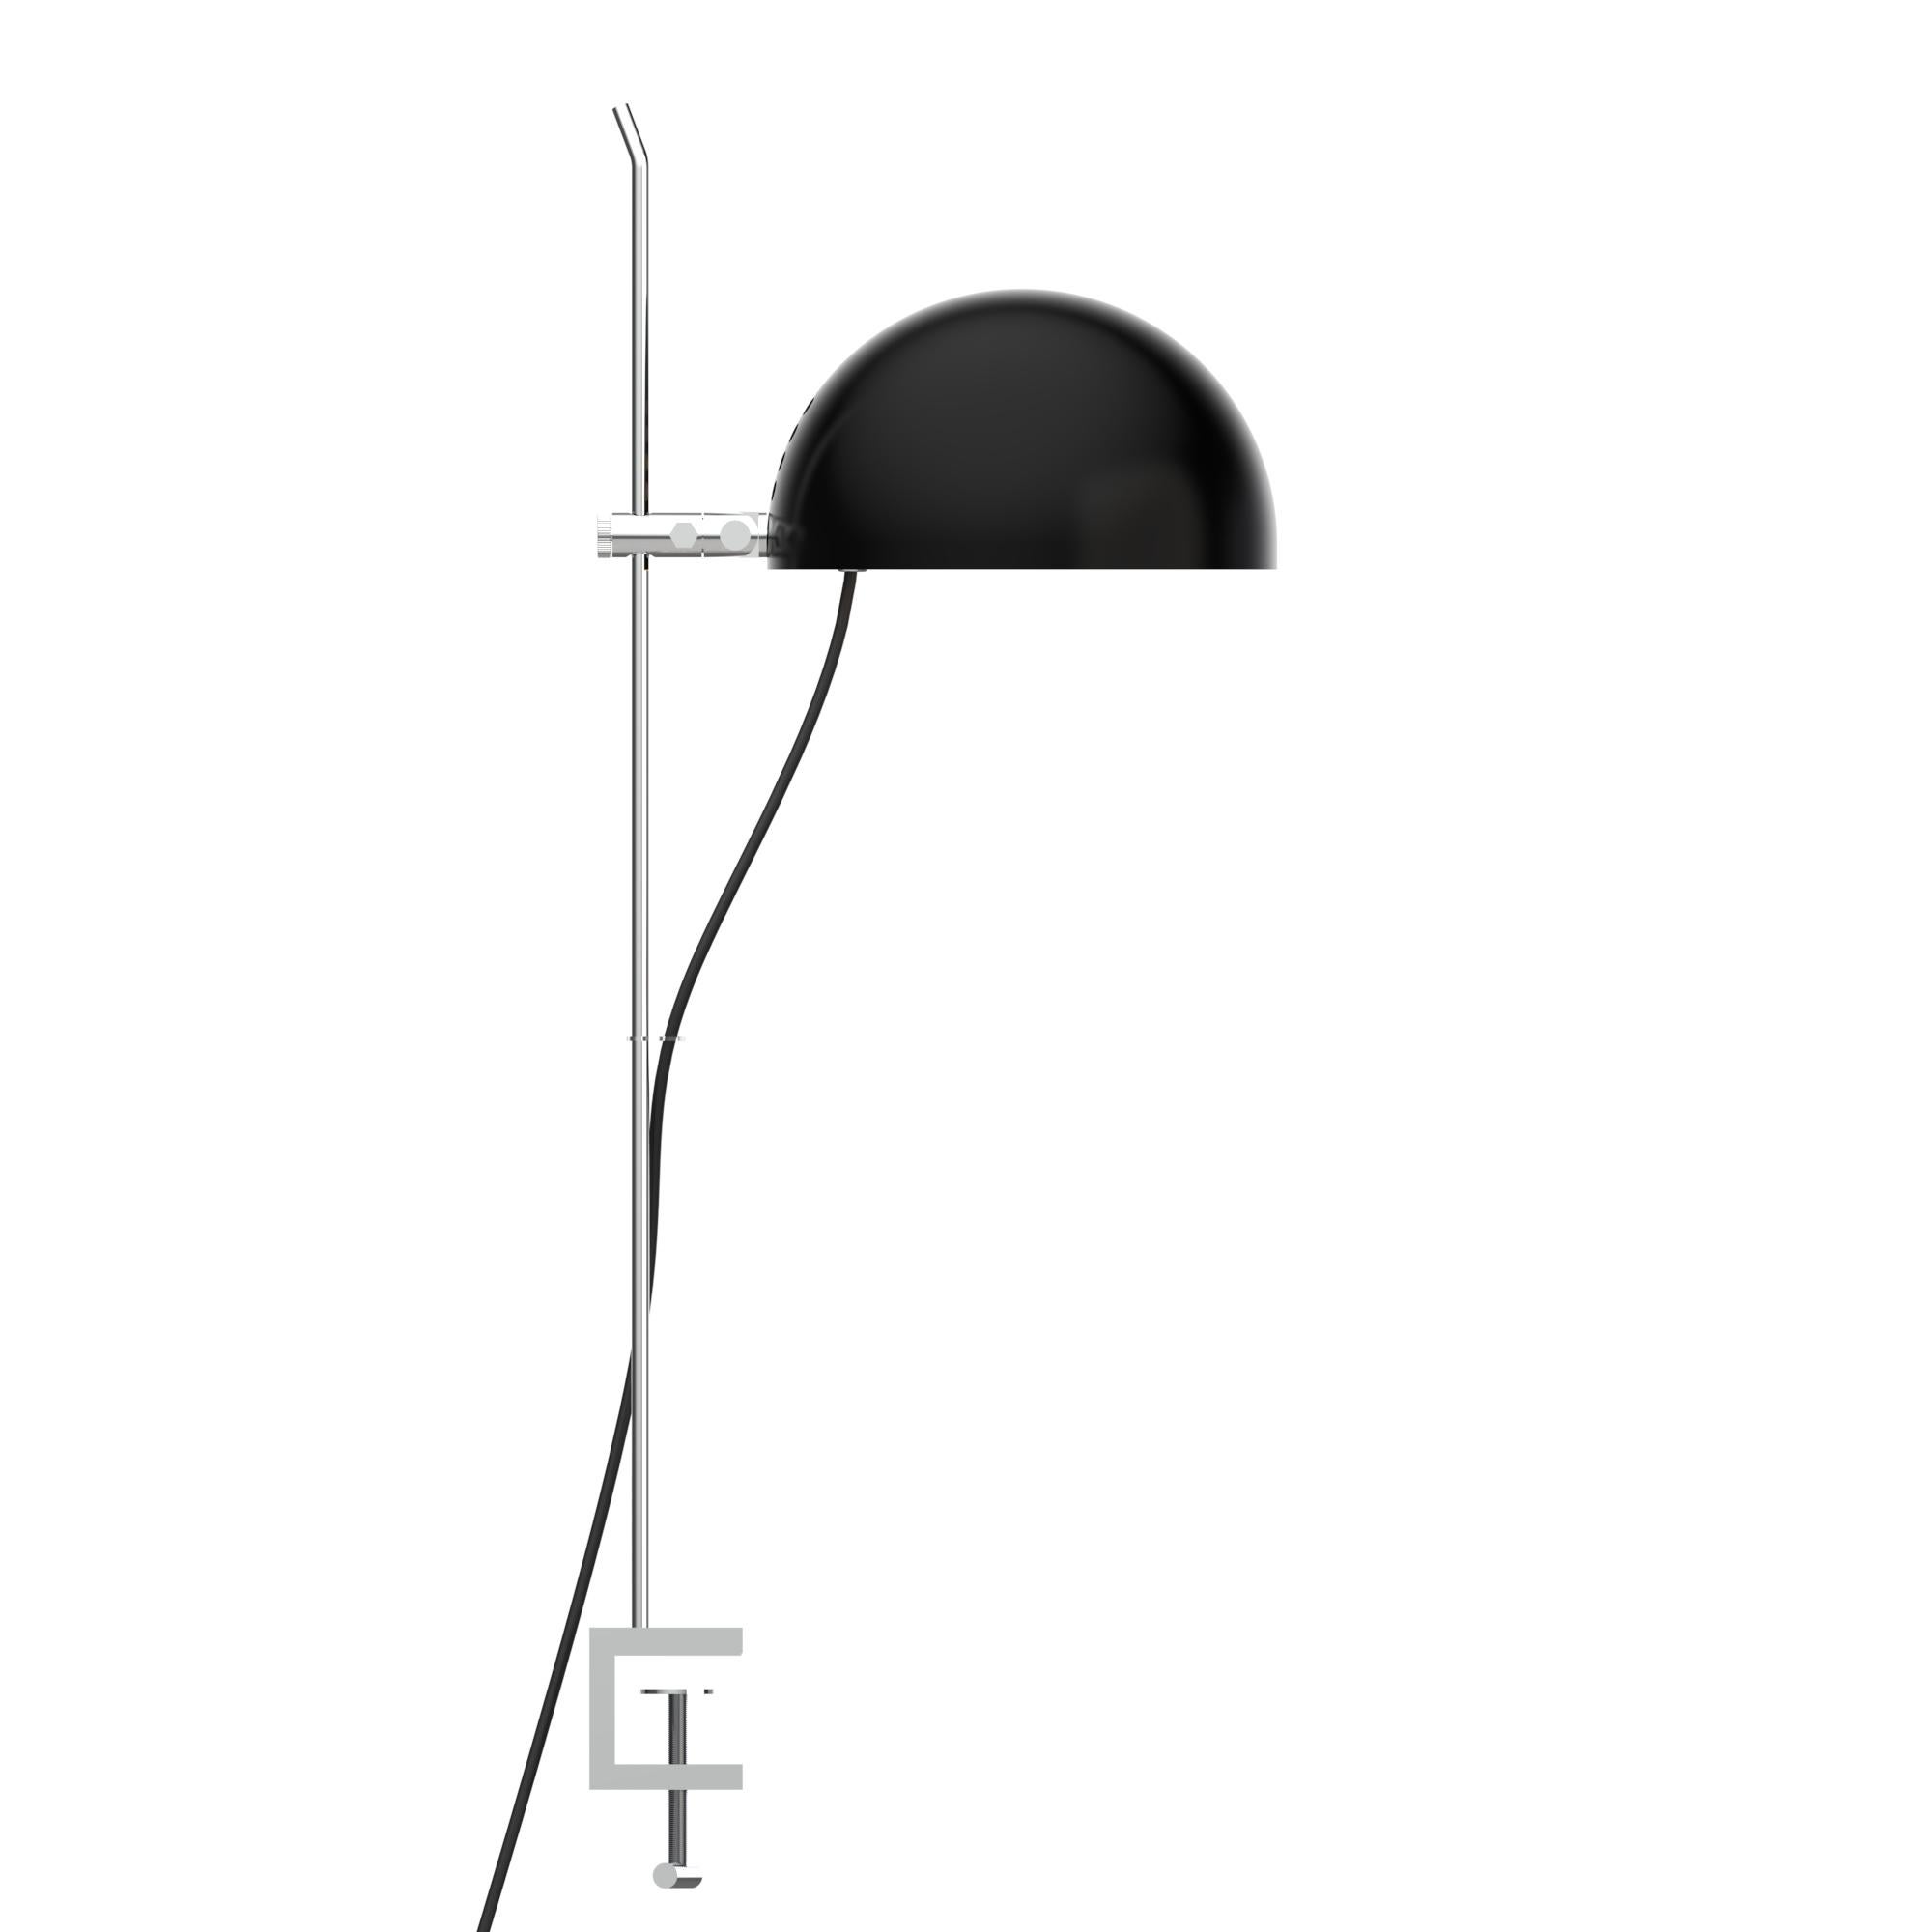 Alain Richard 'A22' Desk Lamp in Green for Disderot For Sale 8